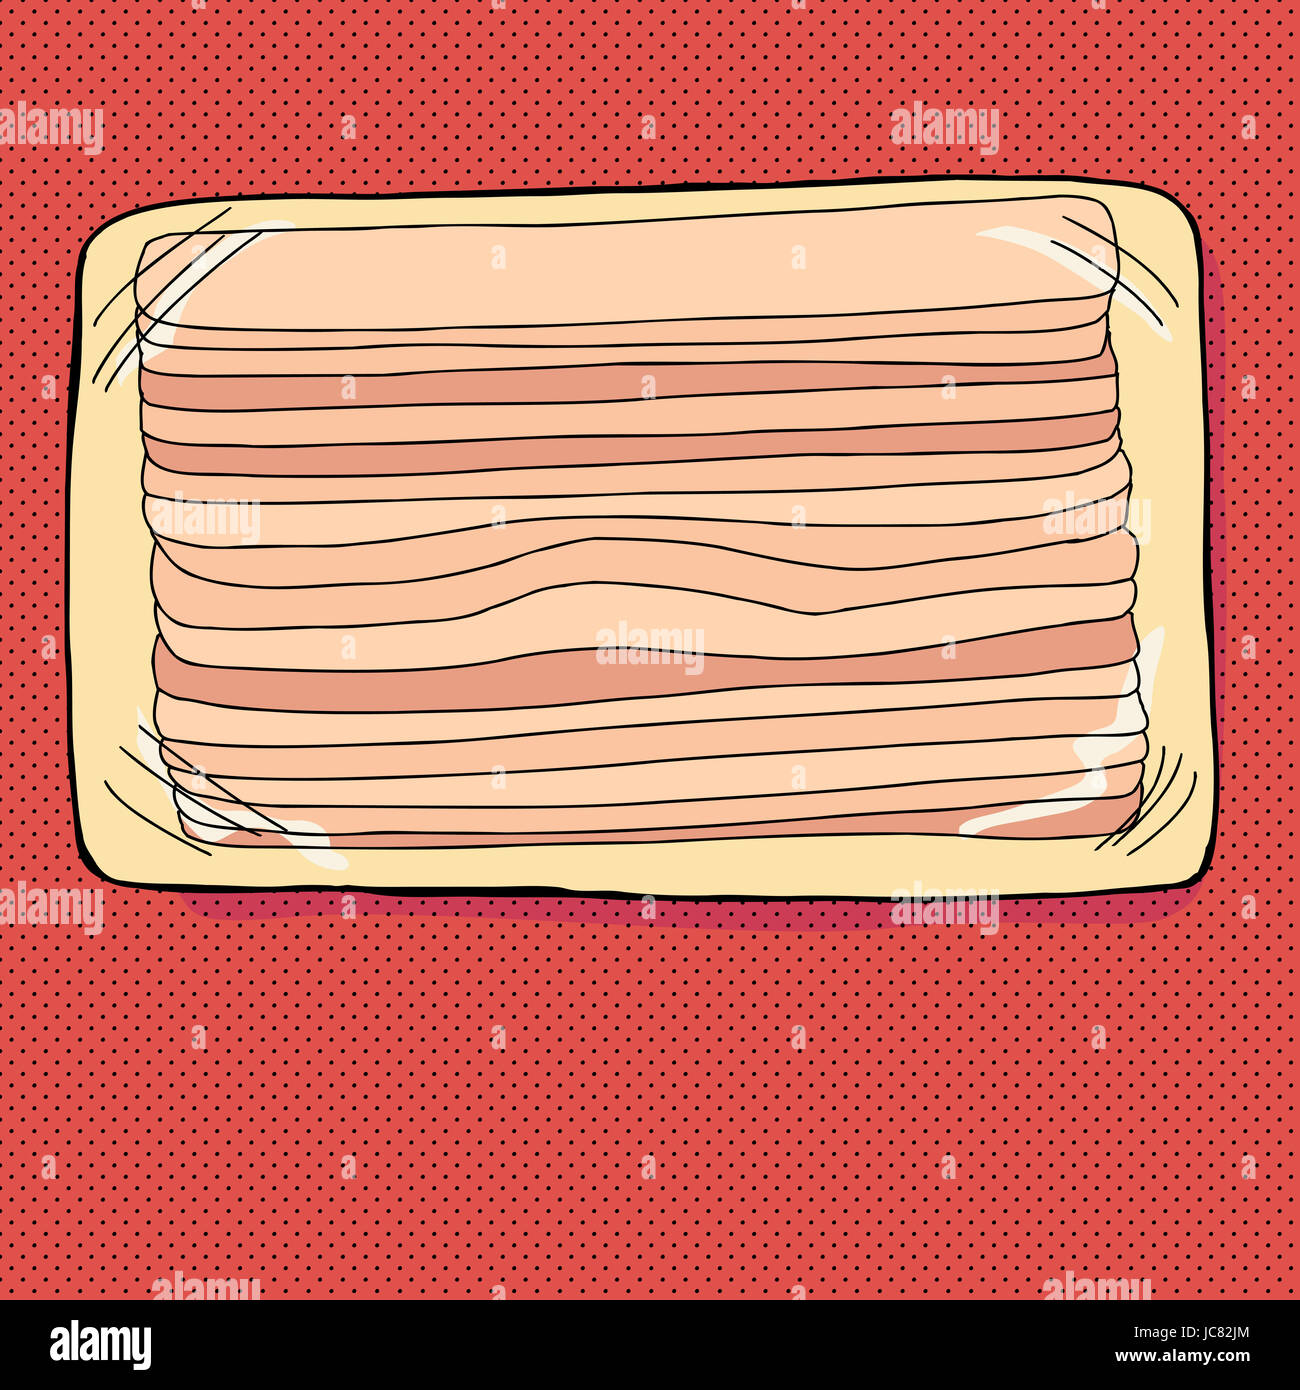 Paquet de bacon dessiné à la main sur fond rouge Banque D'Images